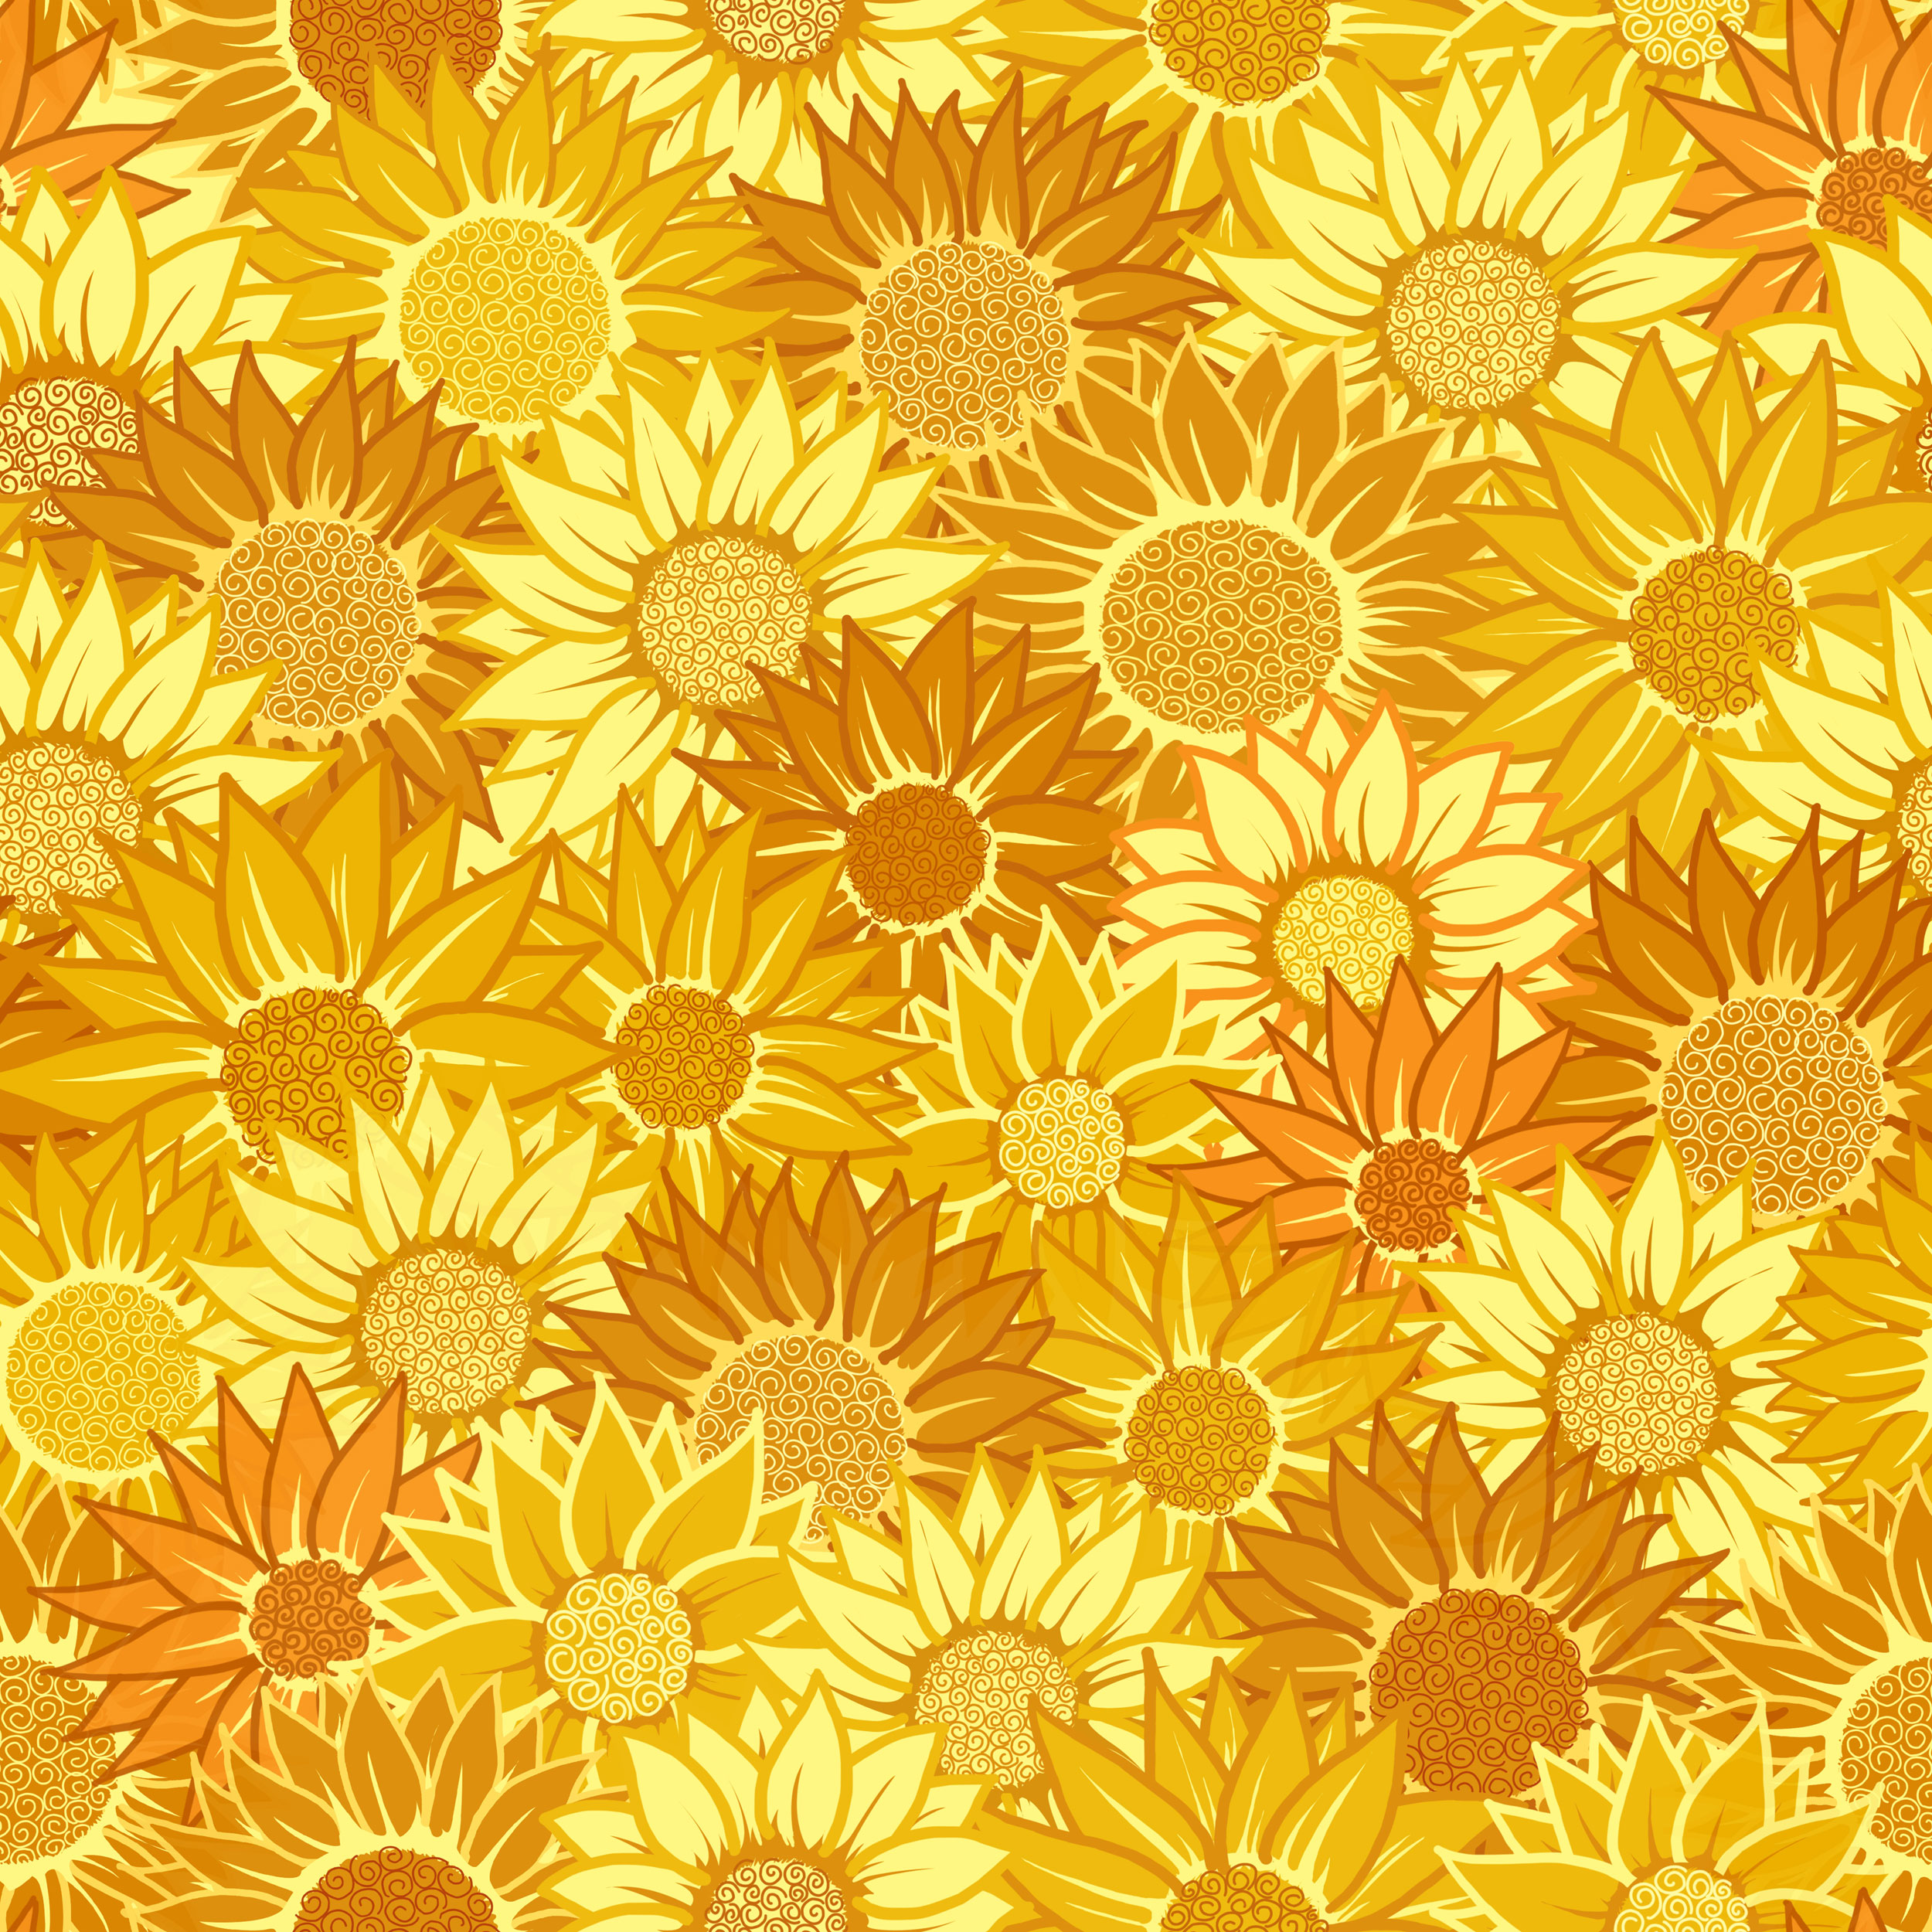 壁紙 背景イラスト 花の模様 柄 パターン No 291 ひまわり 黄